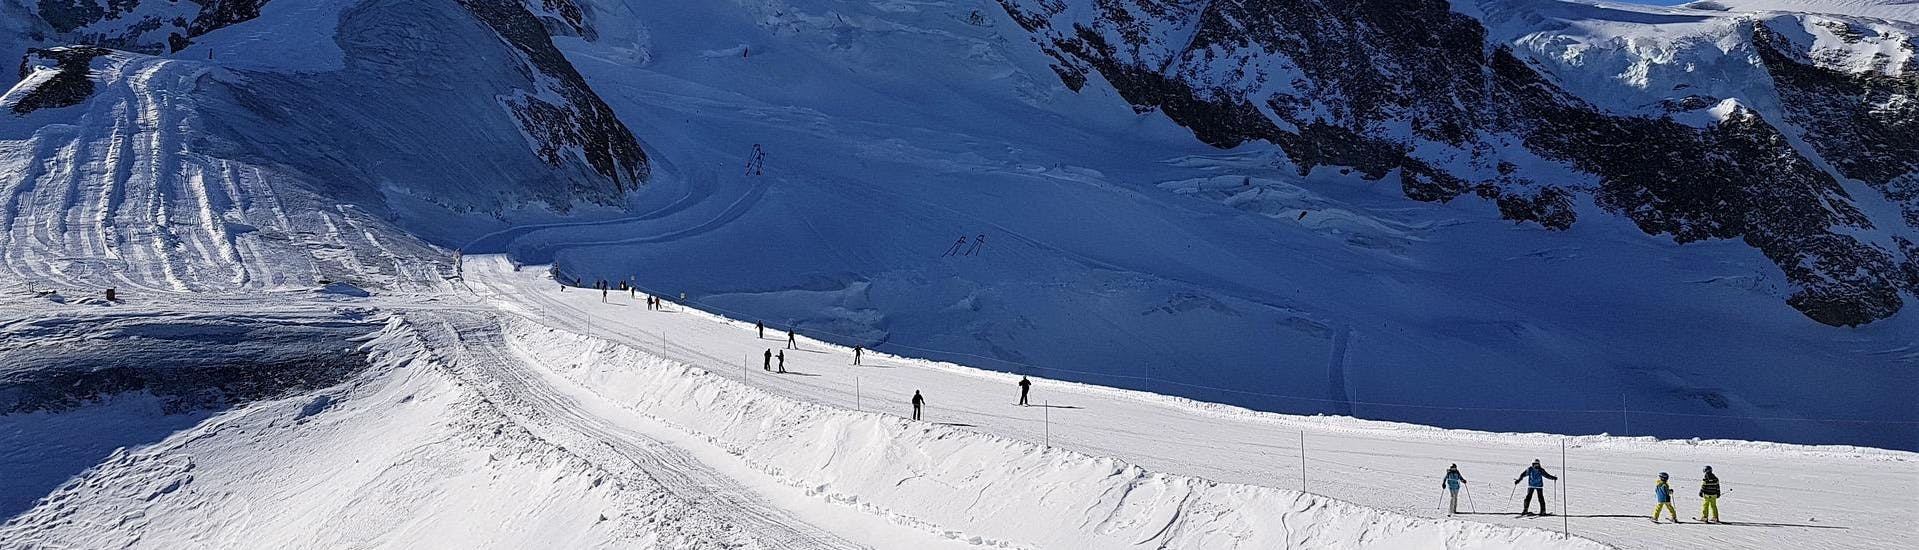 Adultes et enfants skiant dans la station de ski de Saas Fee.